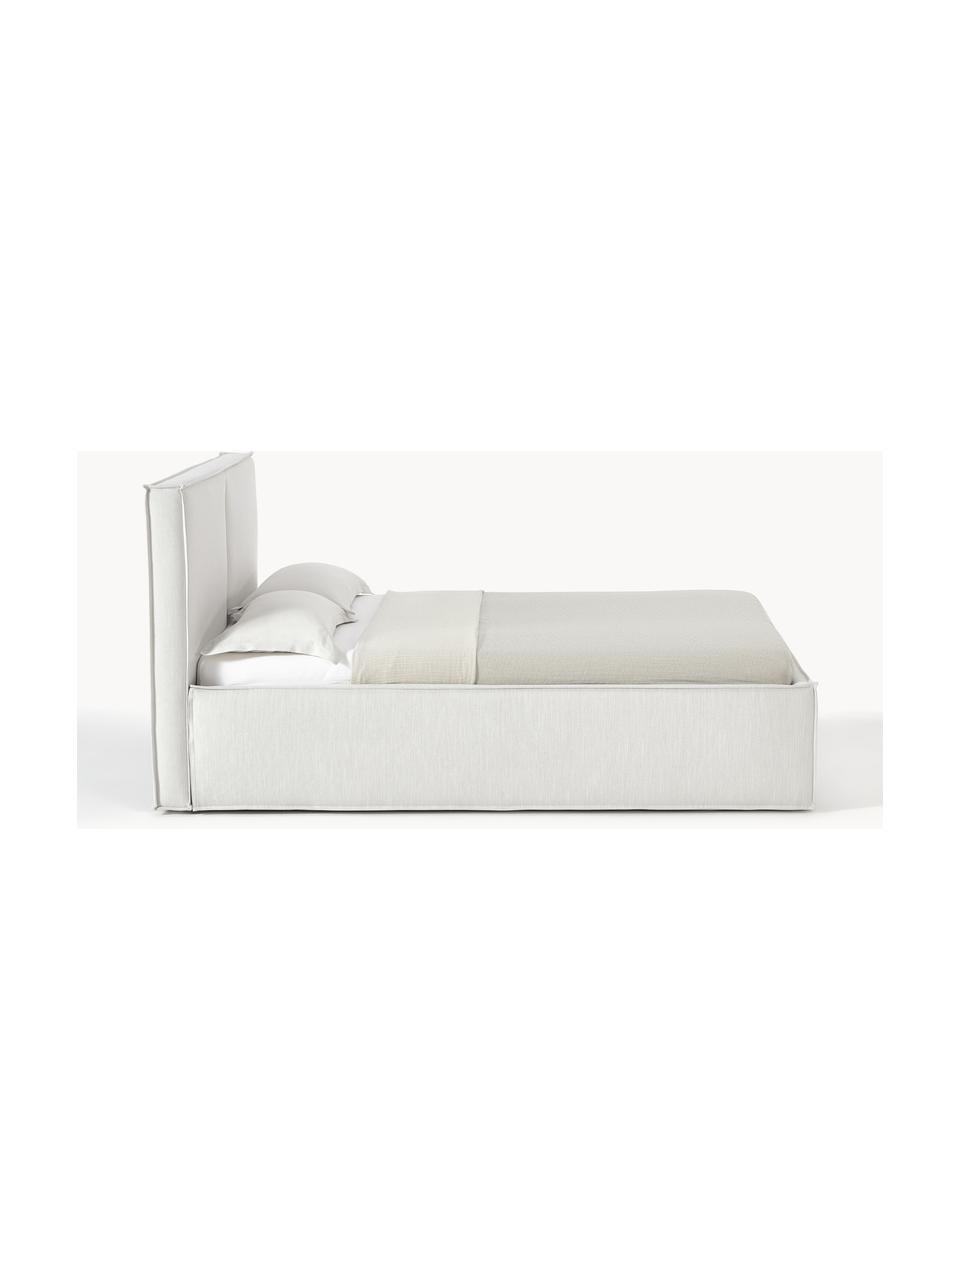 Čalouněná postel s úložným prostorem Dream, Greige, Š 200 cm, D 200 cm